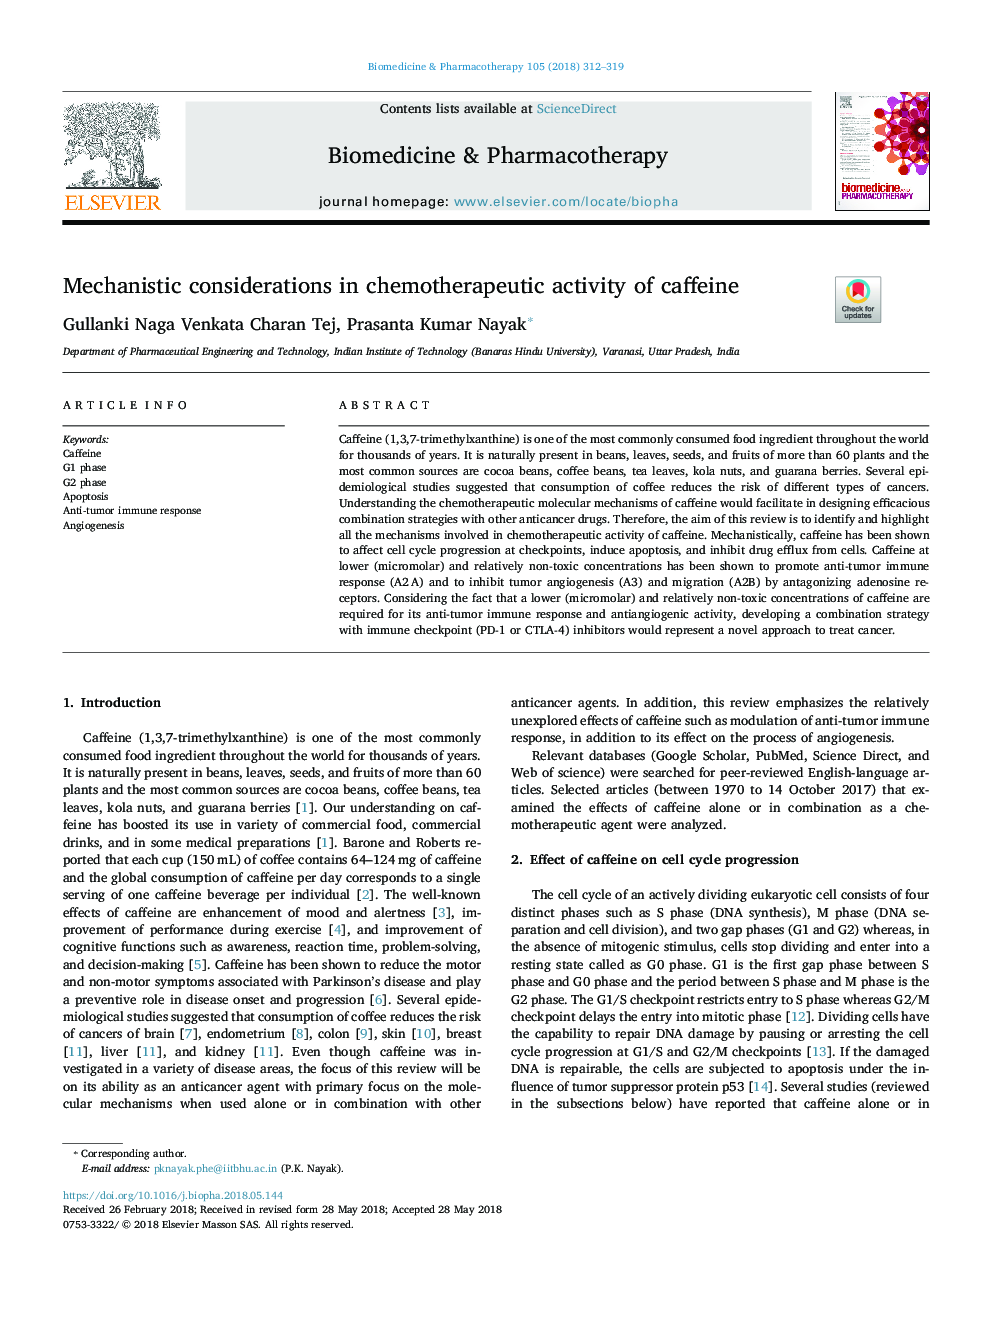 ملاحظات مکانیکی در فعالیت شیمی درمانی کافئین 